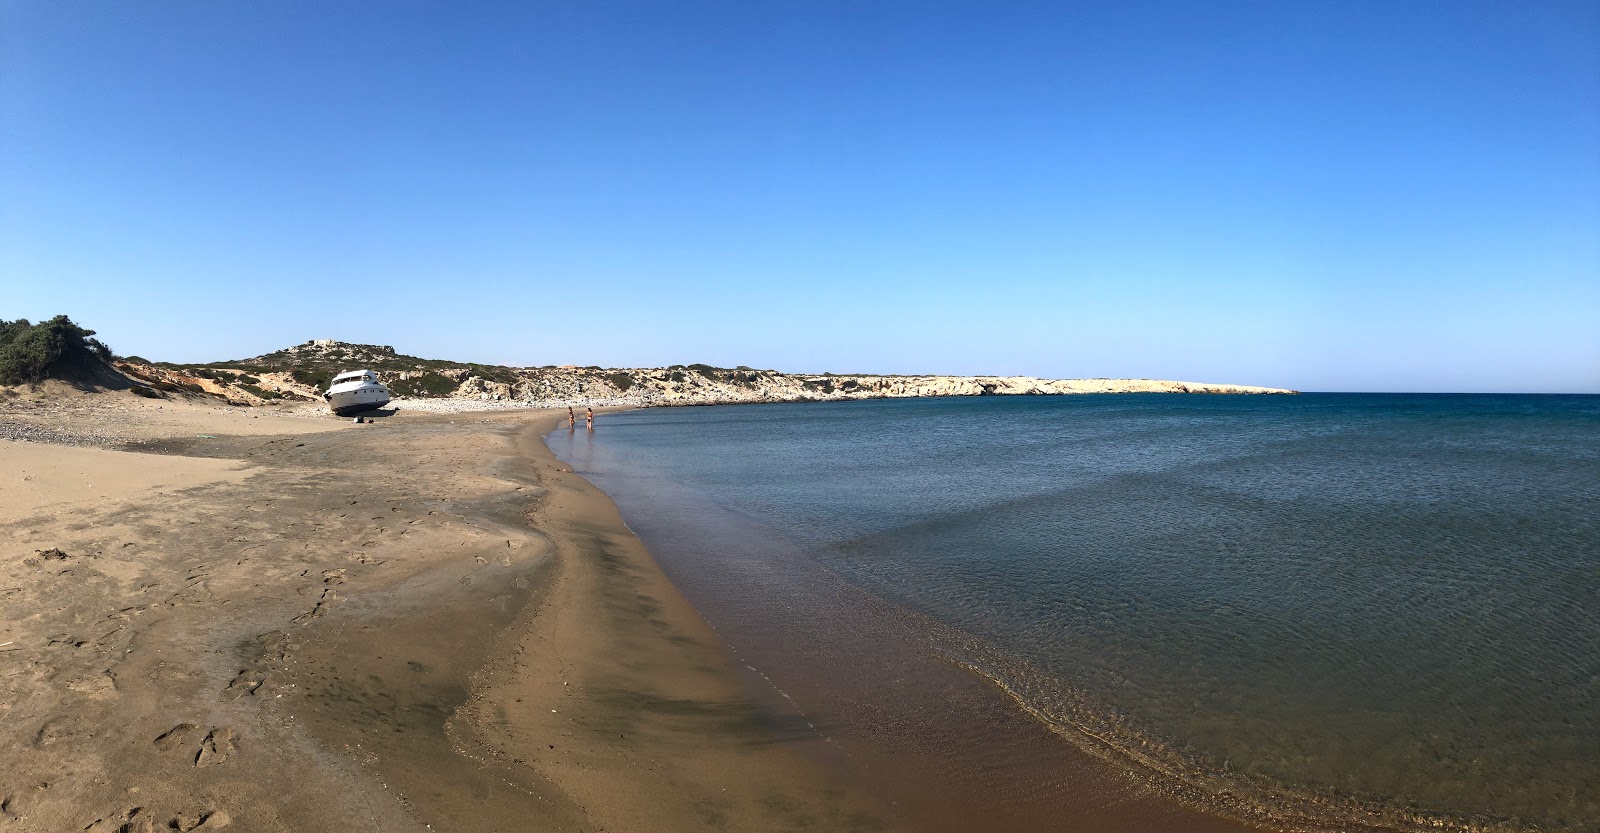 Foto de Agios Georgios Beach II com areia com seixos superfície